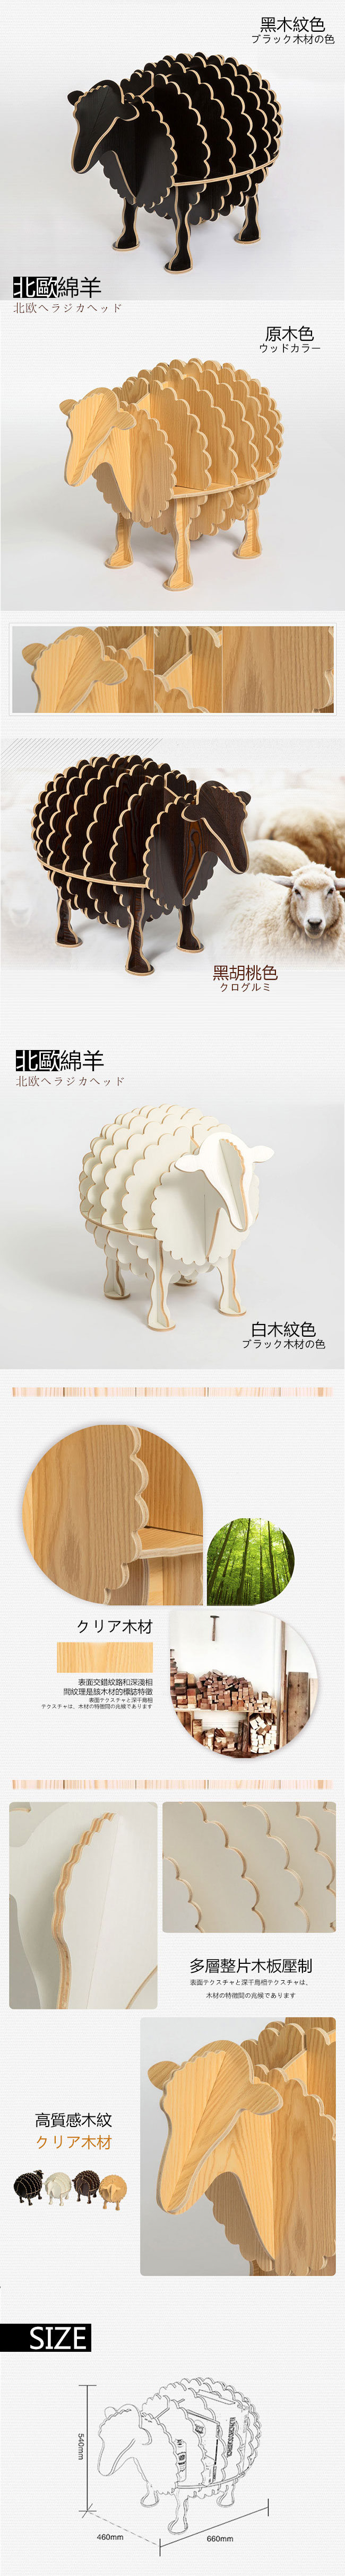 北歐綿羊創意多功能木書架